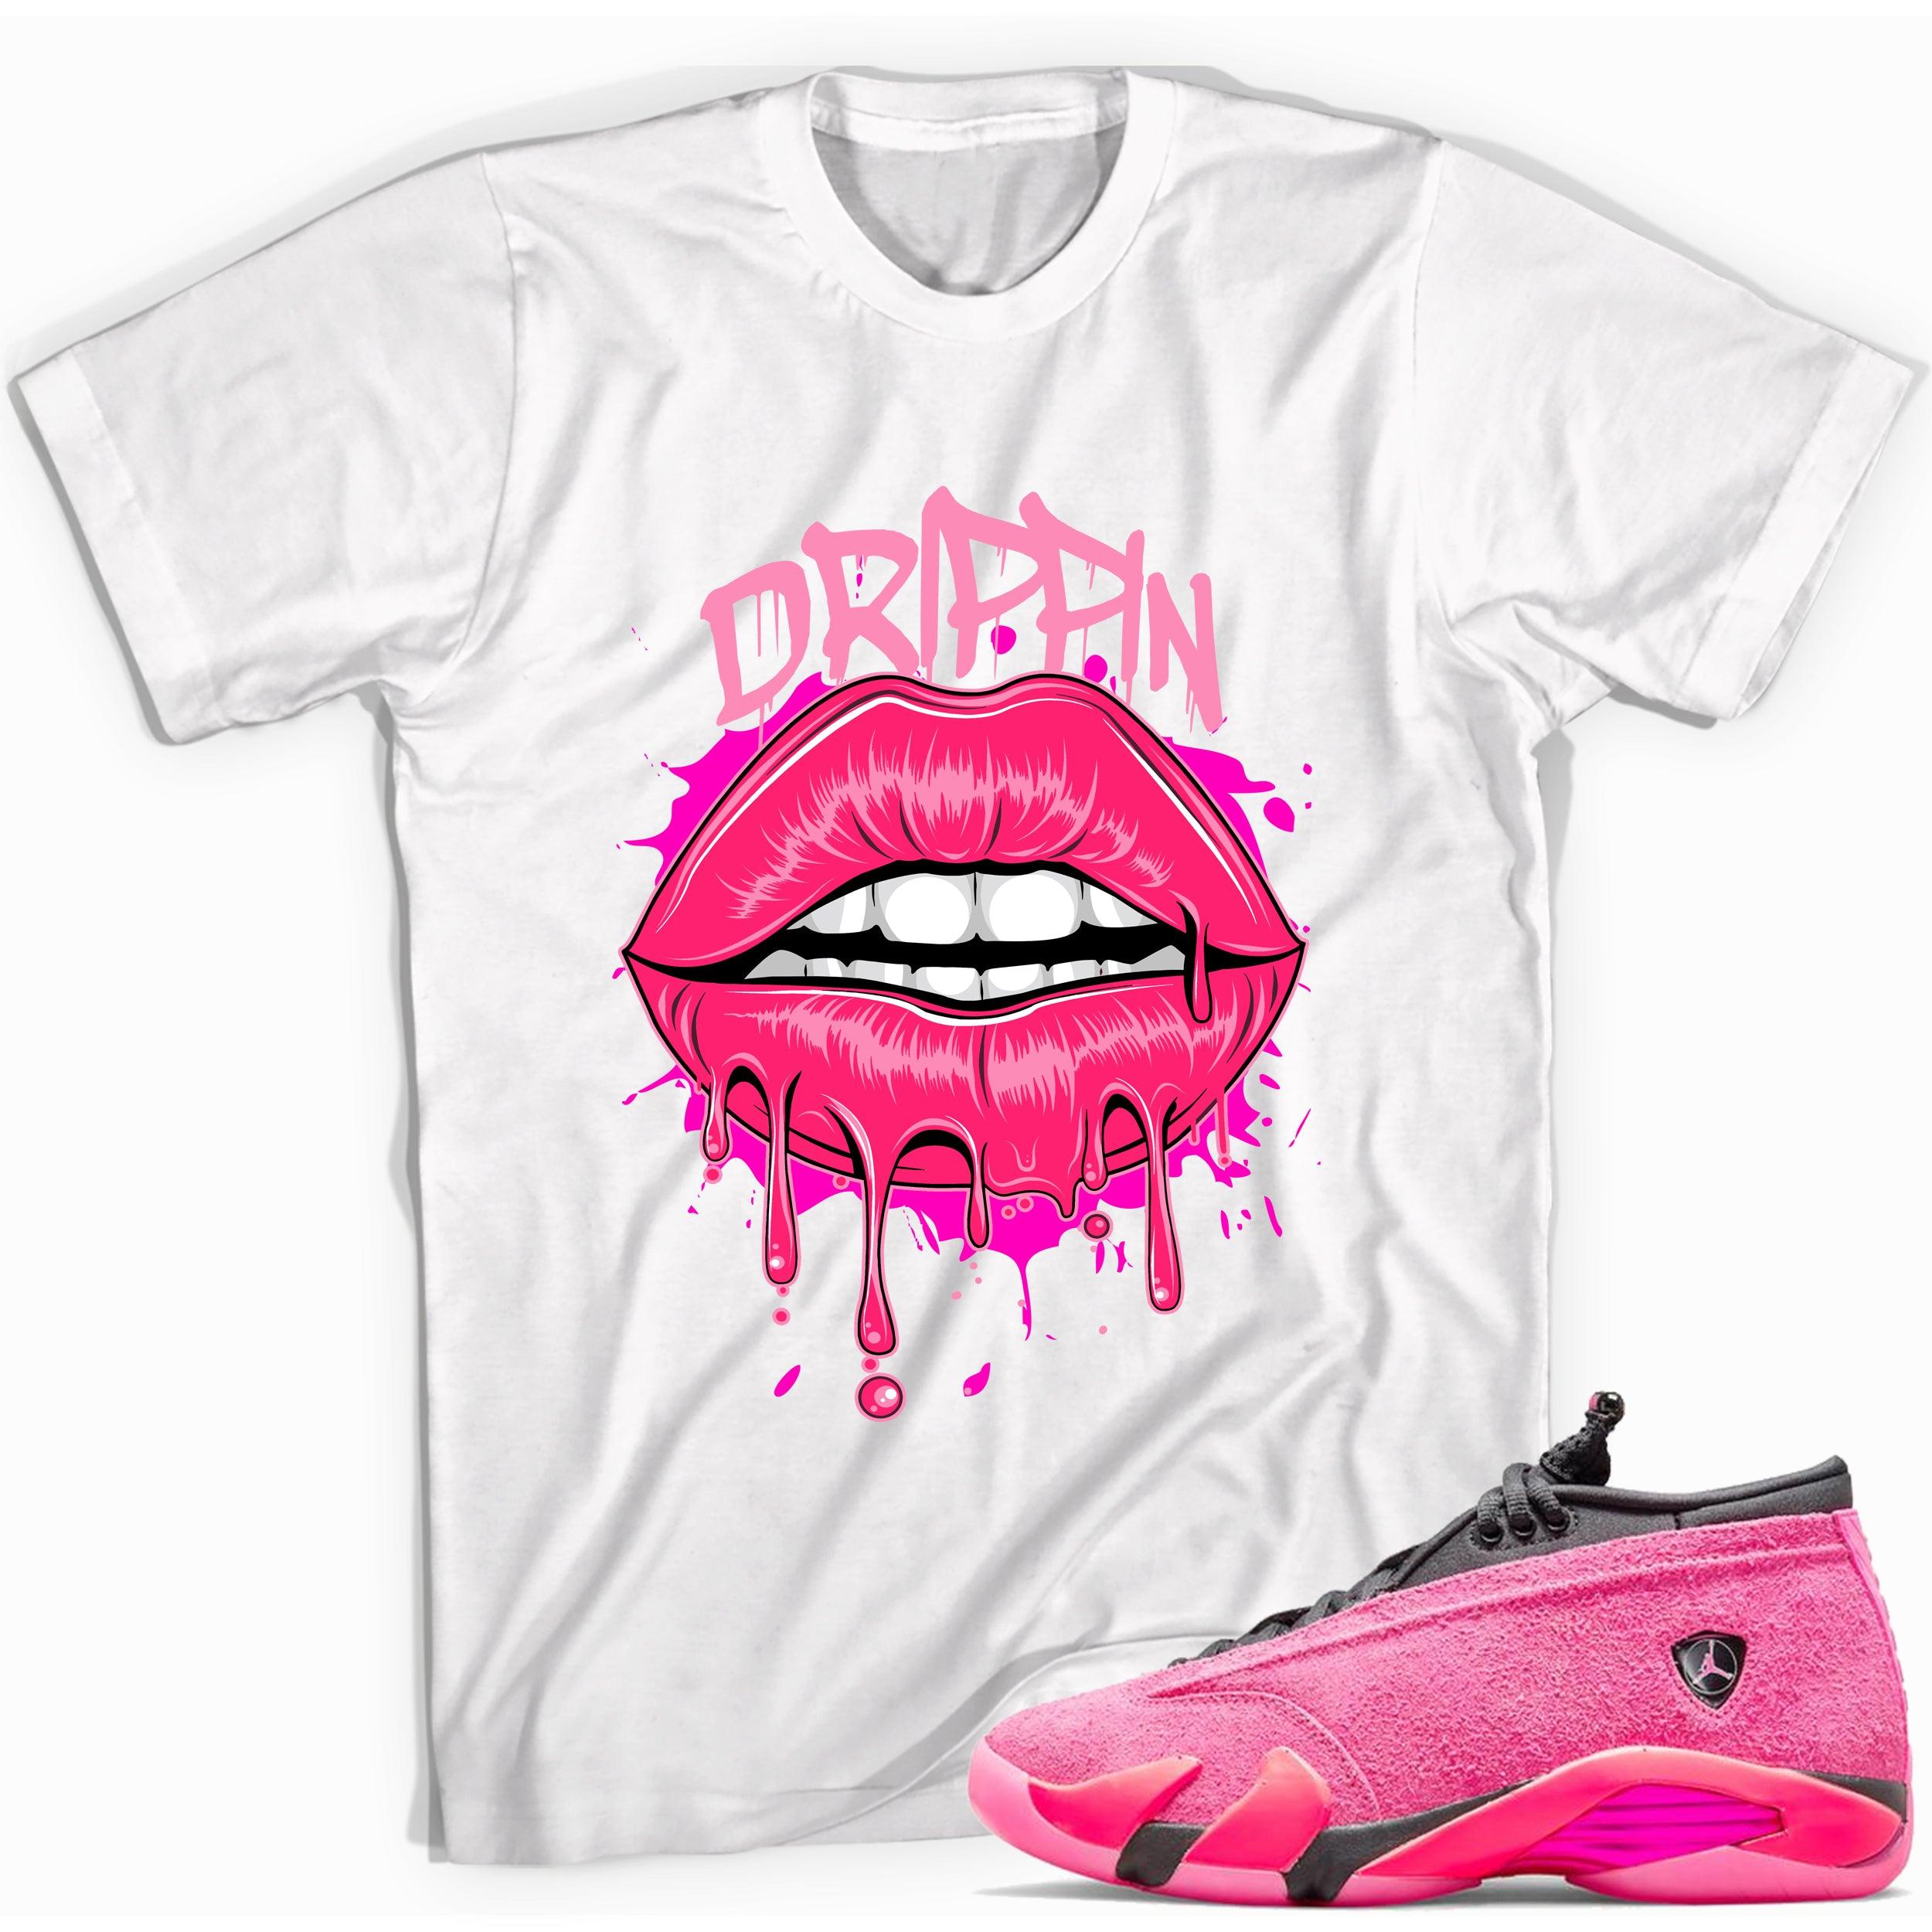 Drippin Shirt Jordan 14s Low Shocking Pink photo